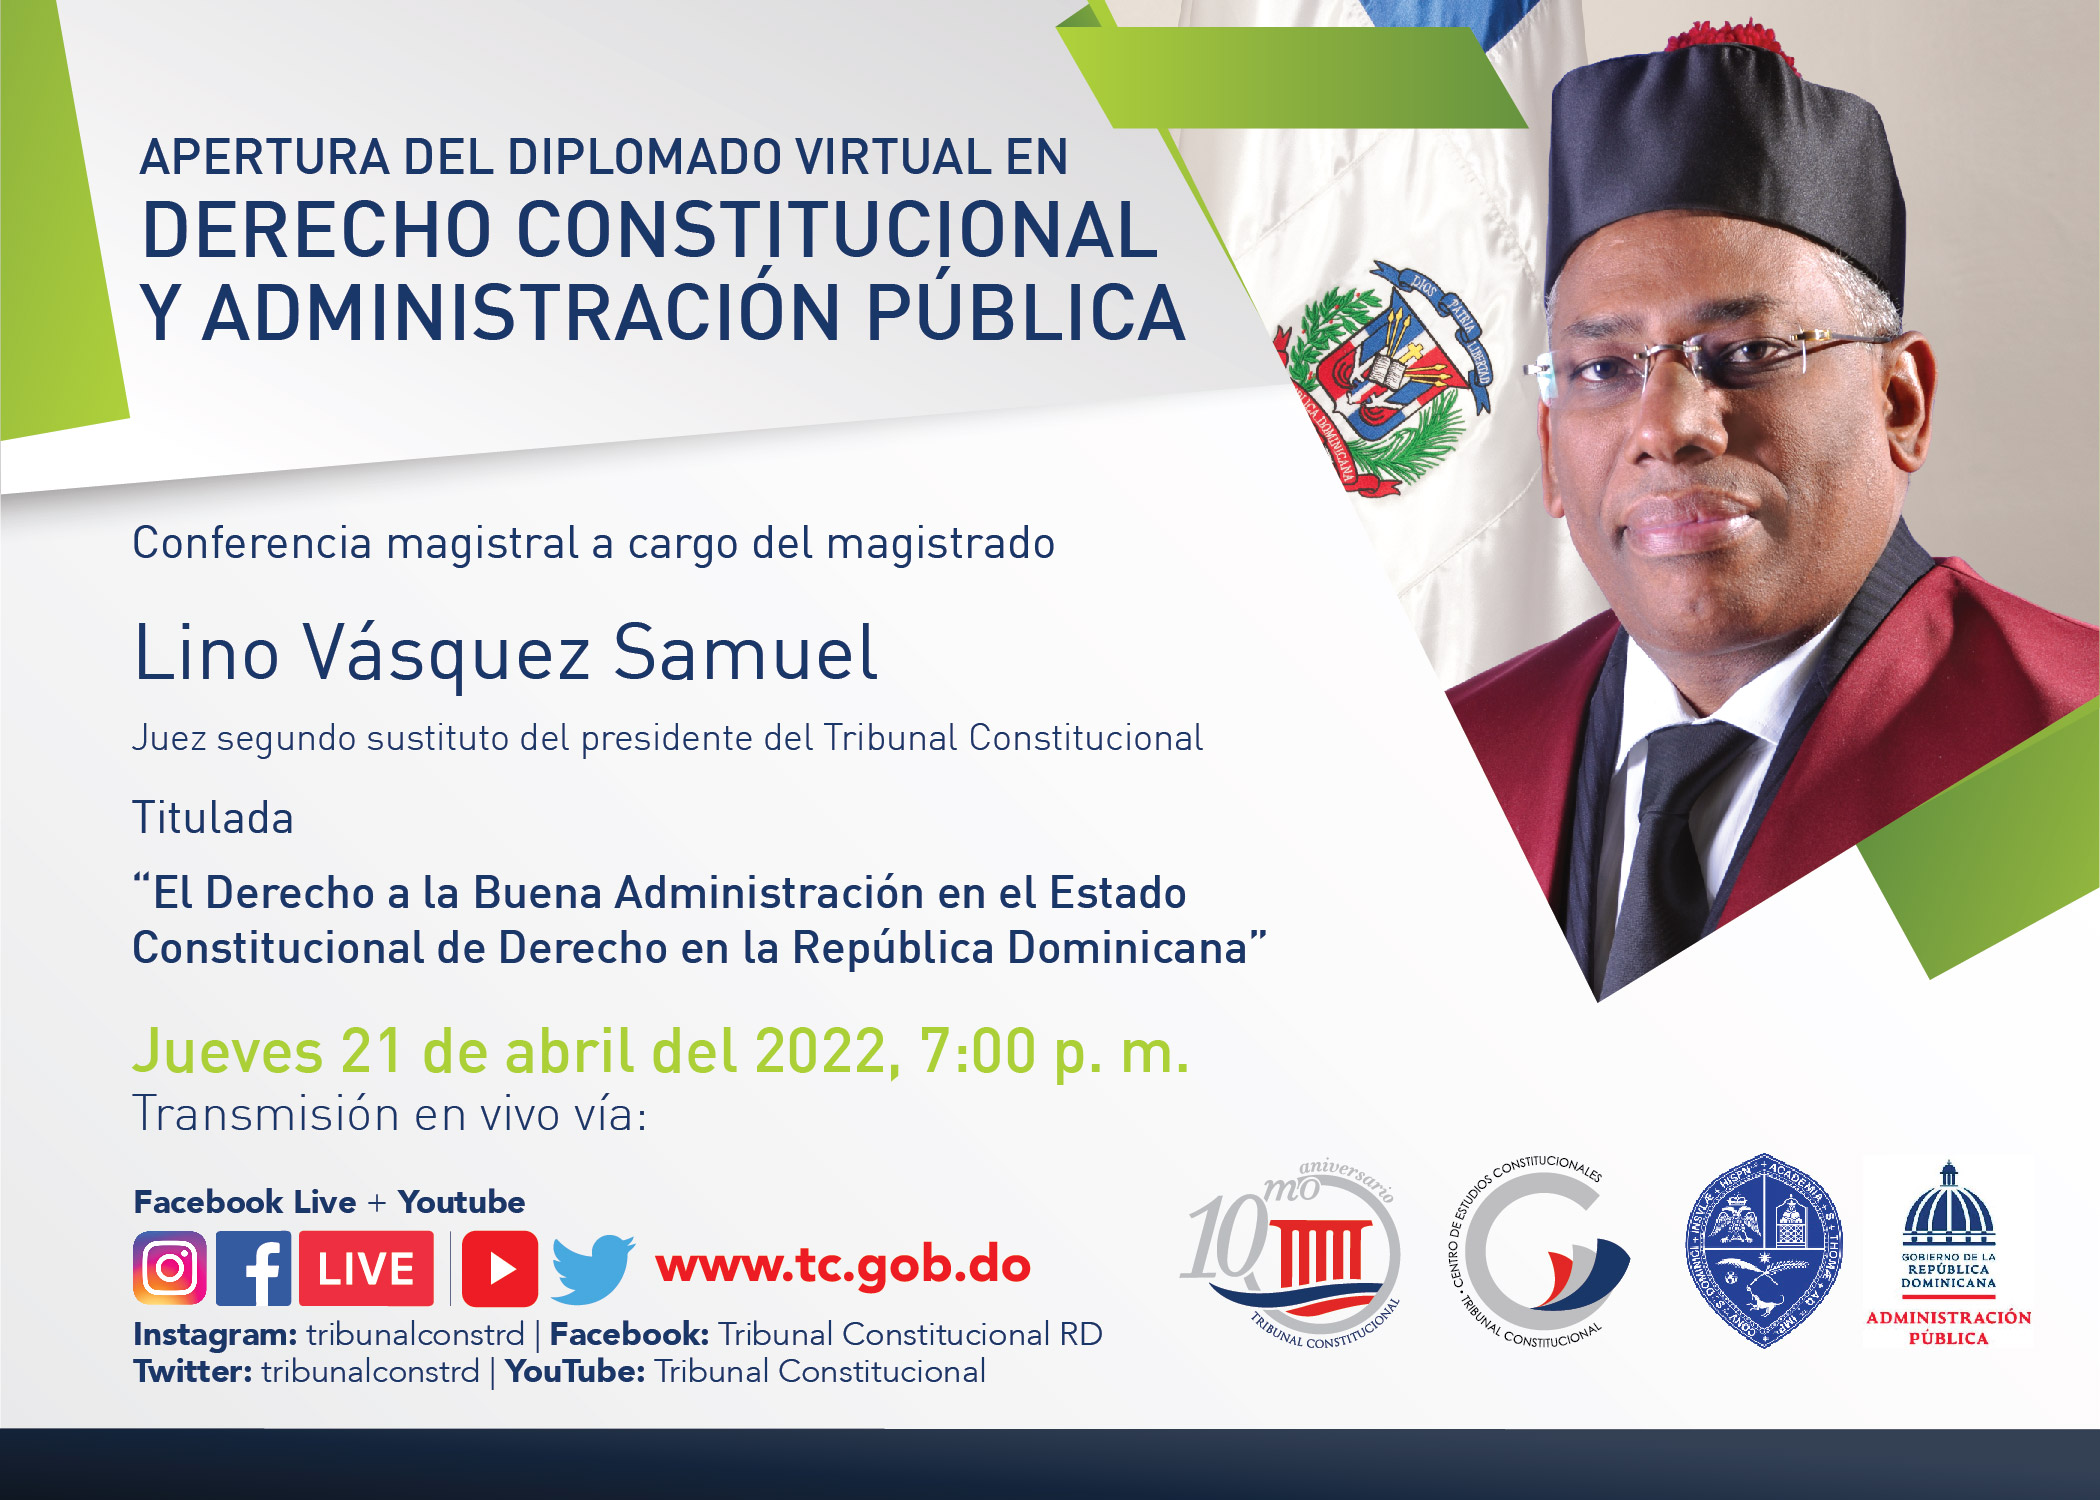 Diplomado Virtual en Derecho Constitucional y Administración Pública